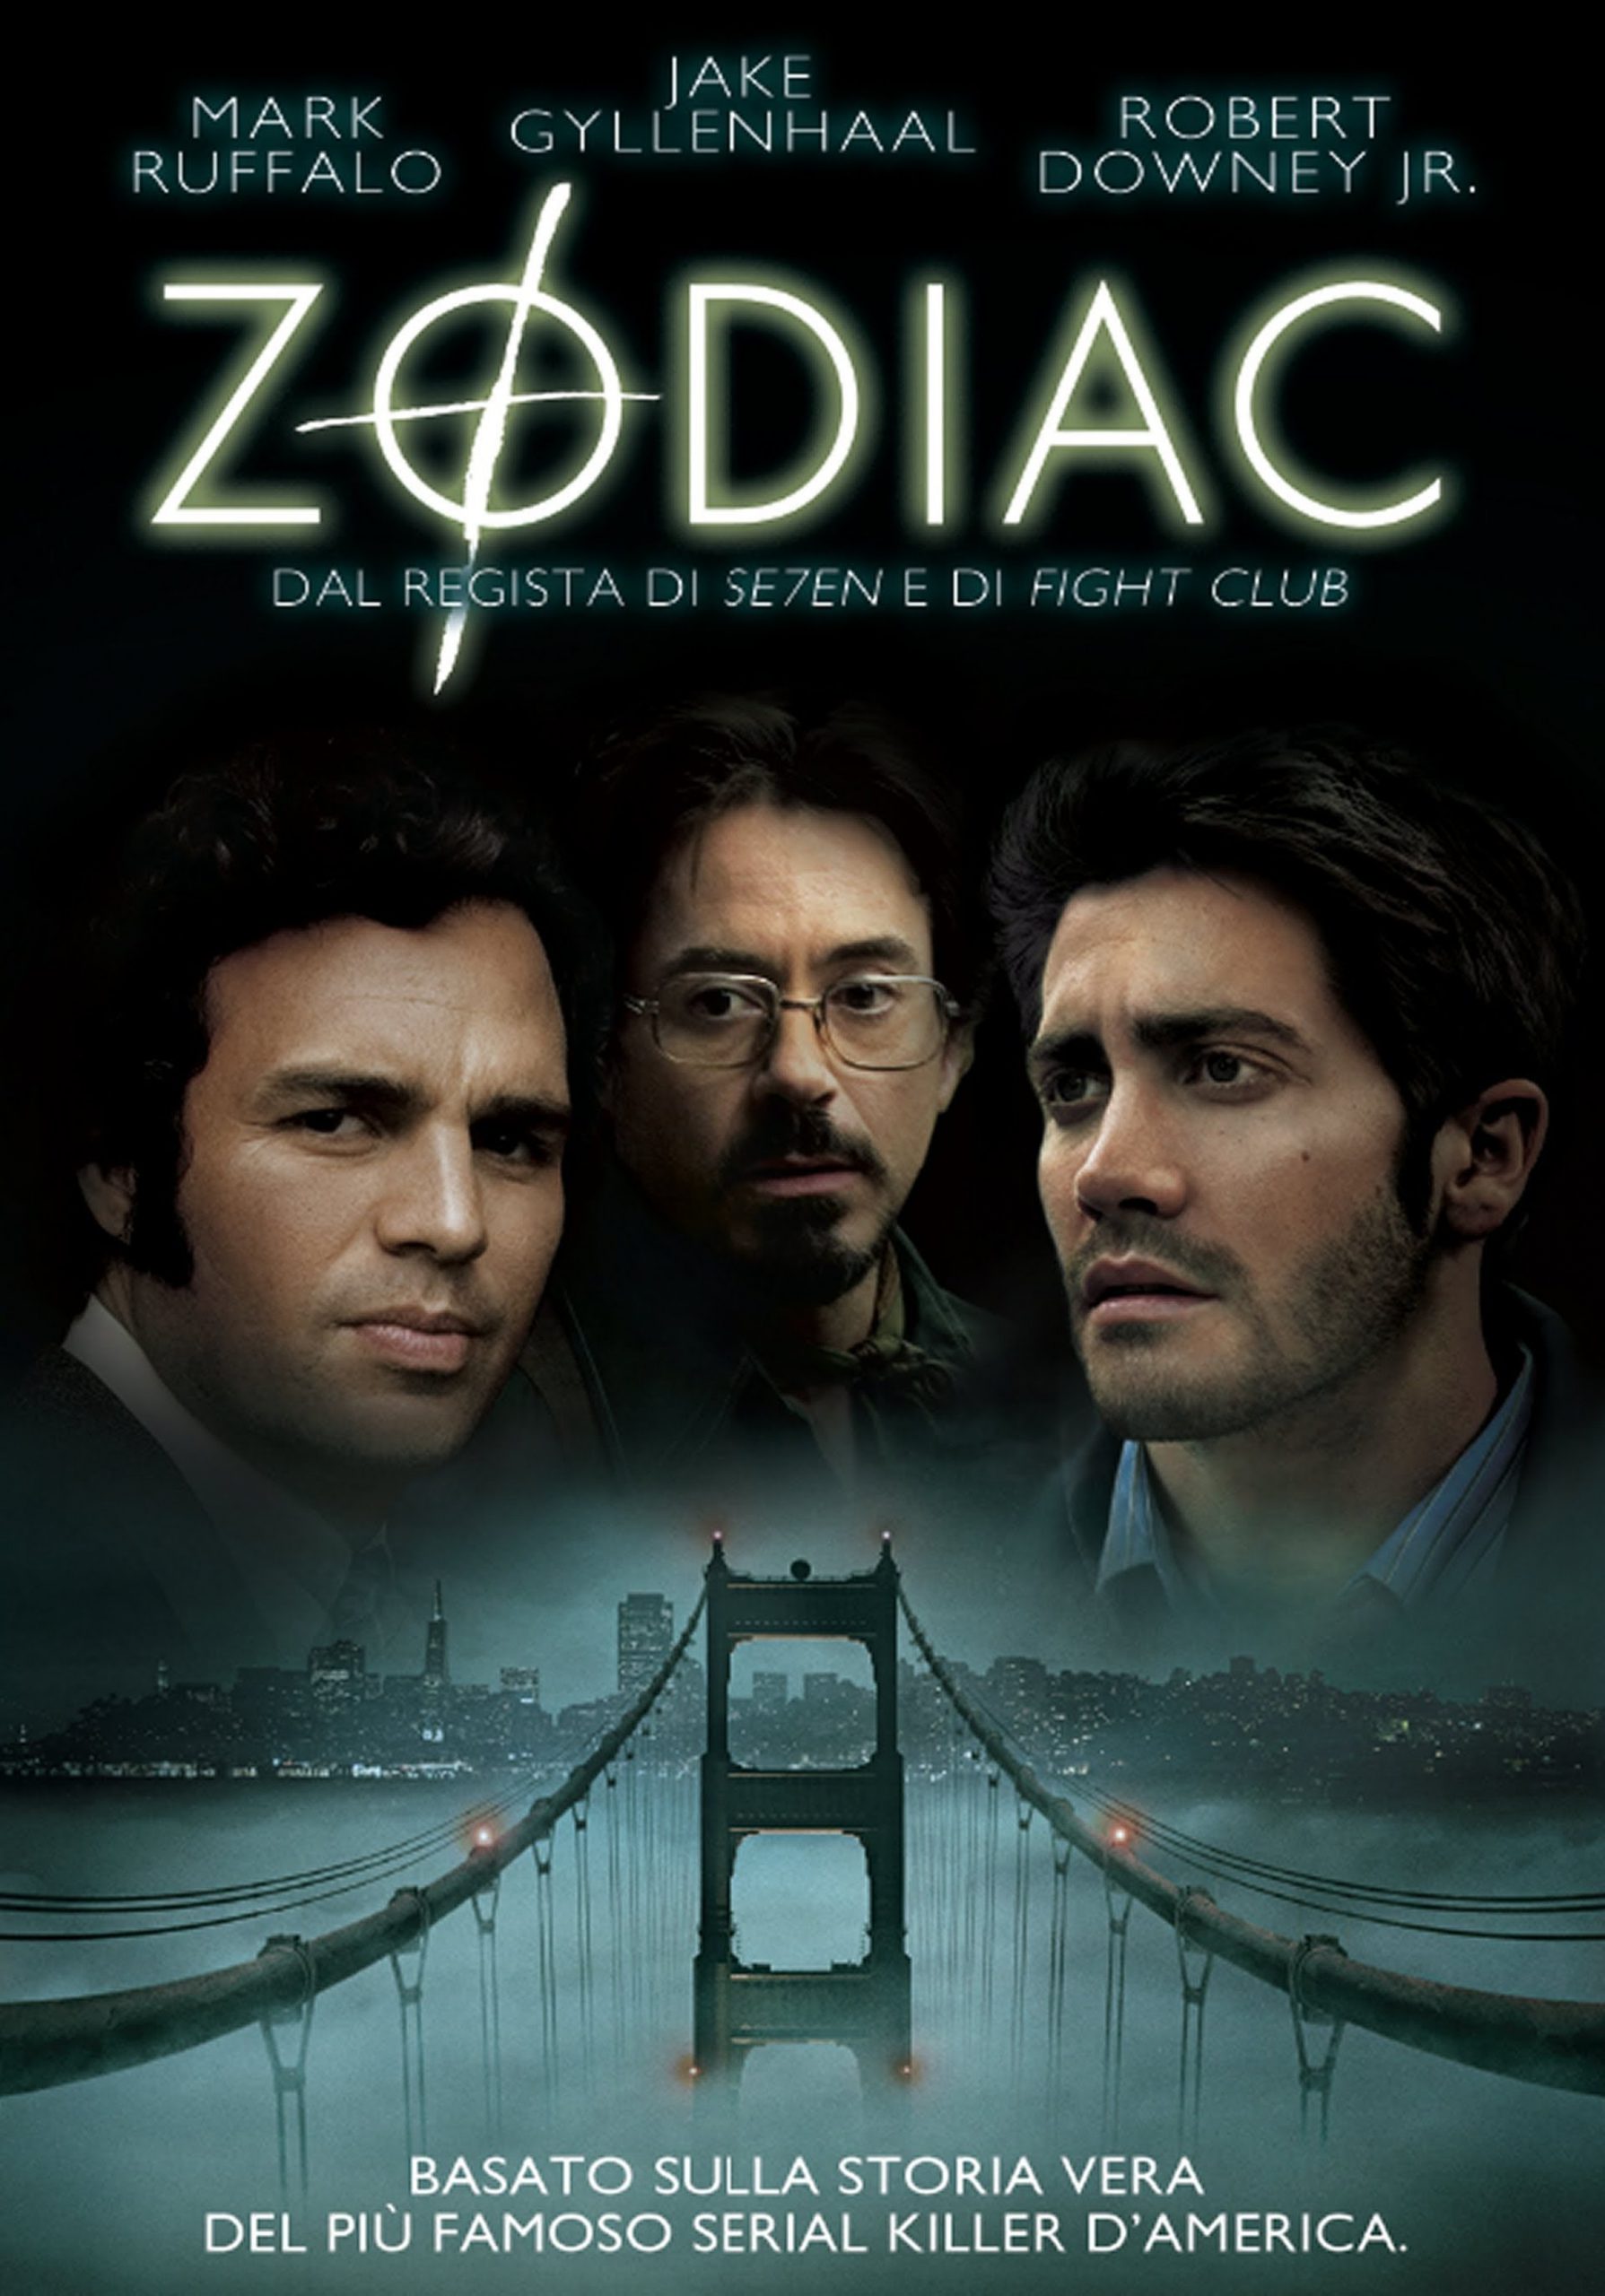 Zodiac [HD] (2007)